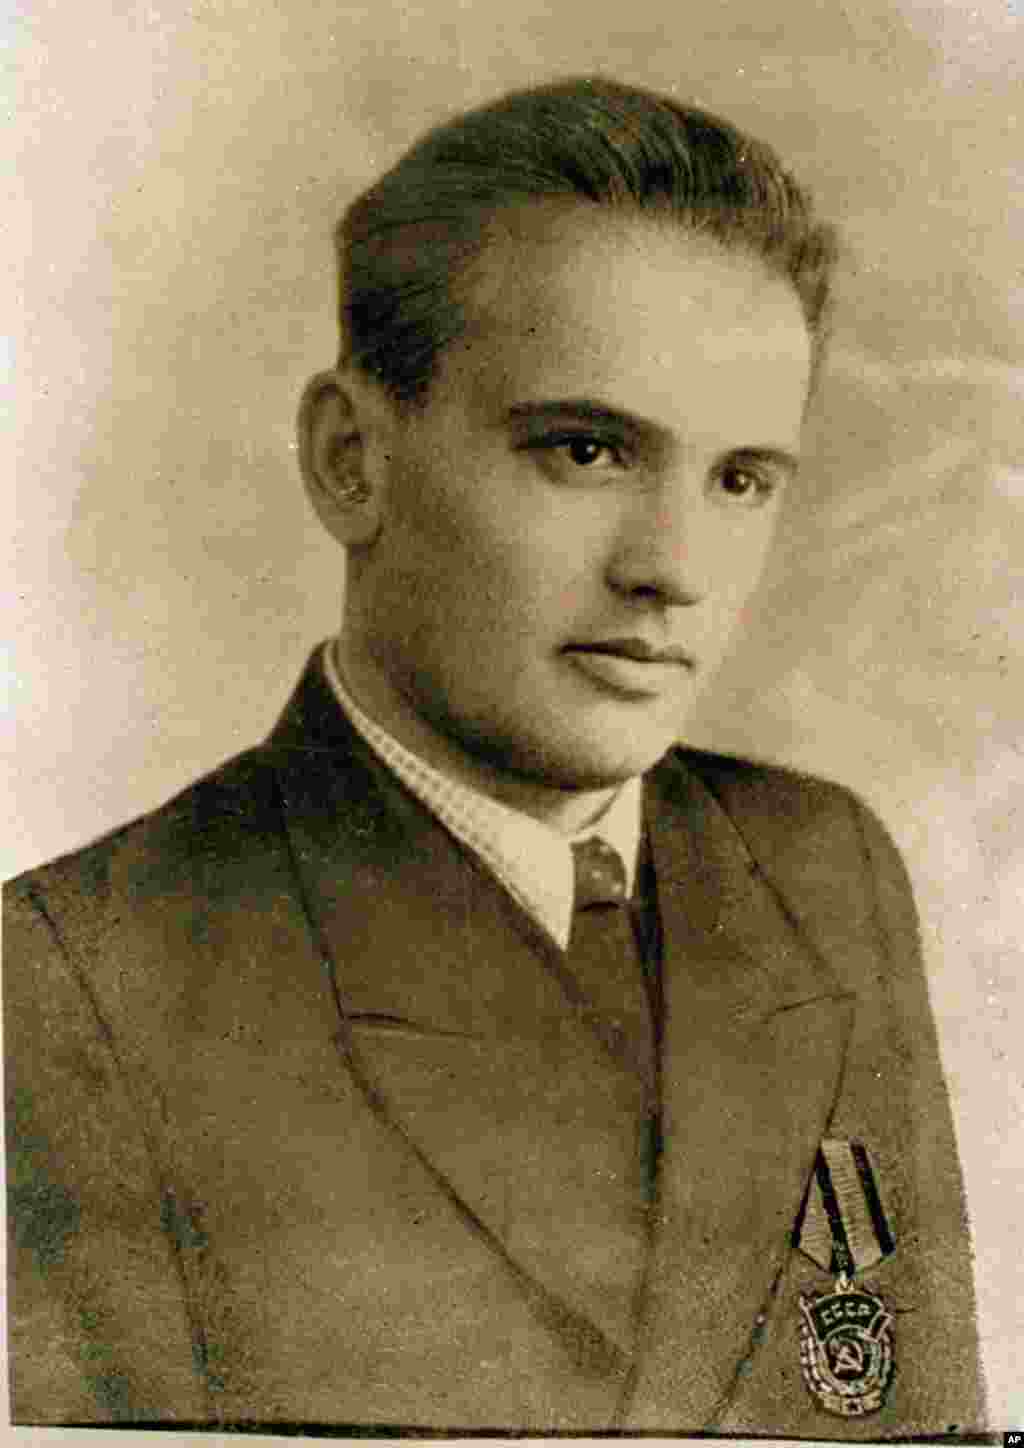 Молодой Горбачев в возрасте 19 лет. На лацкане пиджака у него орден Трудового Красного Знамени, который Горбачев получил за управление комбайном на равнинах юга России